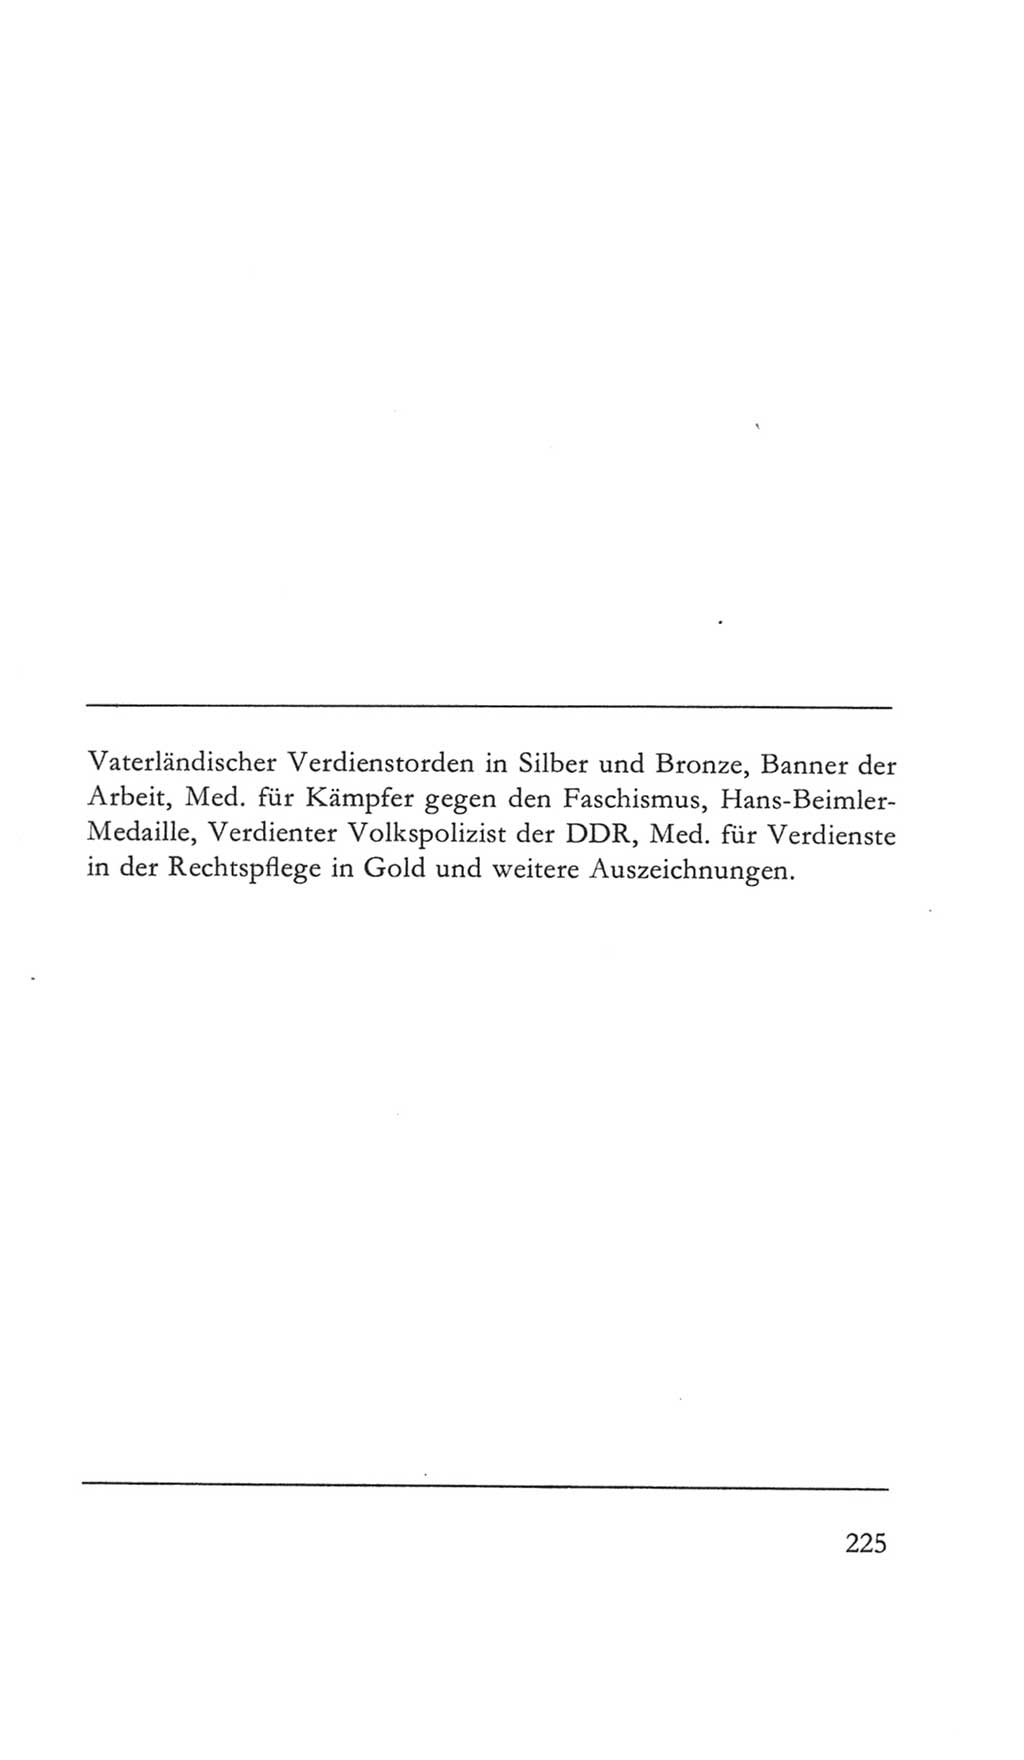 Volkskammer (VK) der Deutschen Demokratischen Republik (DDR) 5. Wahlperiode 1967-1971, Seite 225 (VK. DDR 5. WP. 1967-1971, S. 225)